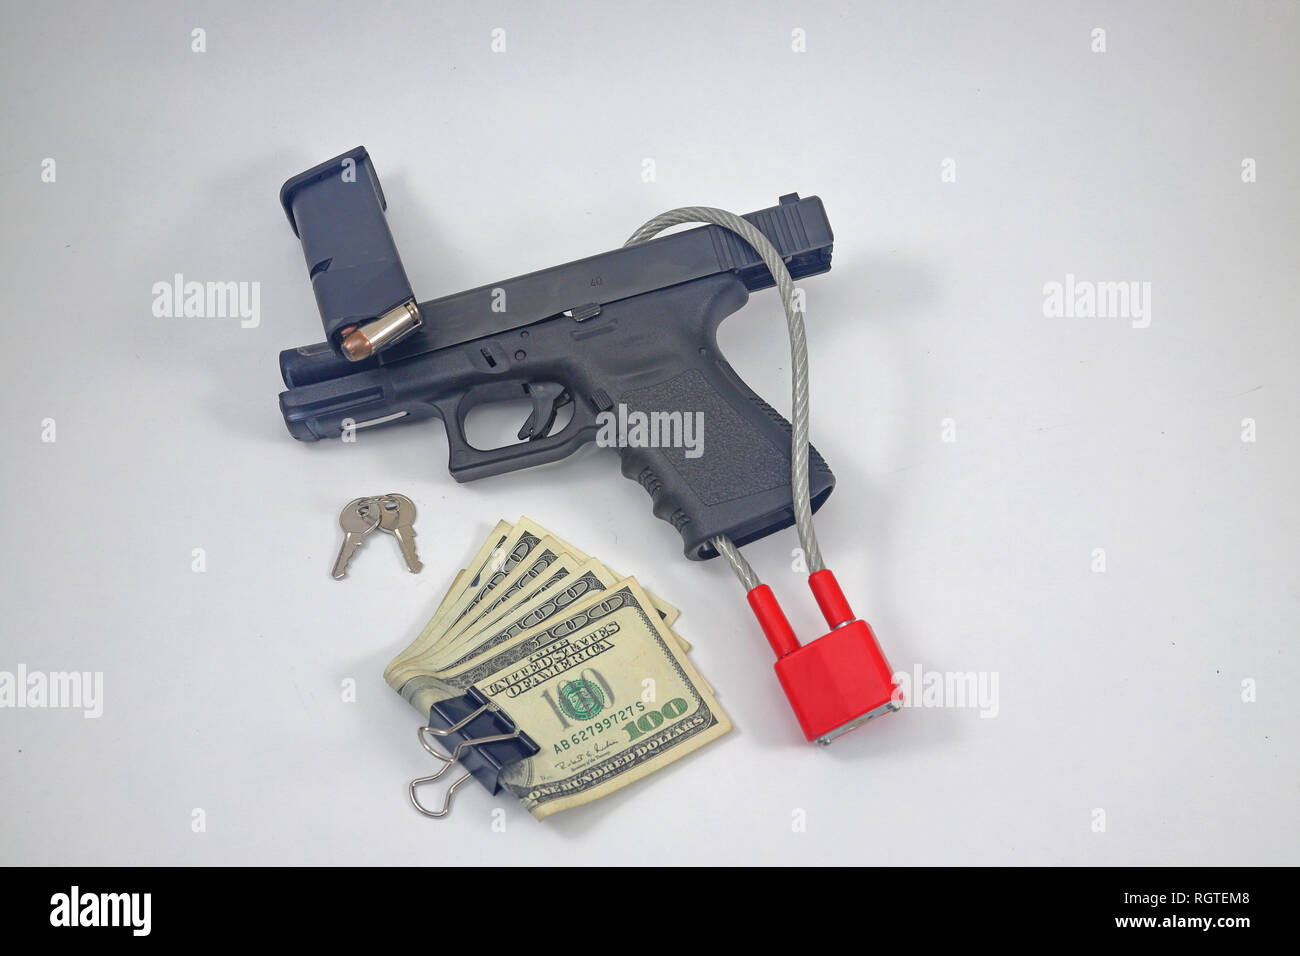 Pistole mit Verriegelung, offenen Kammer und cash Geld Stockfoto